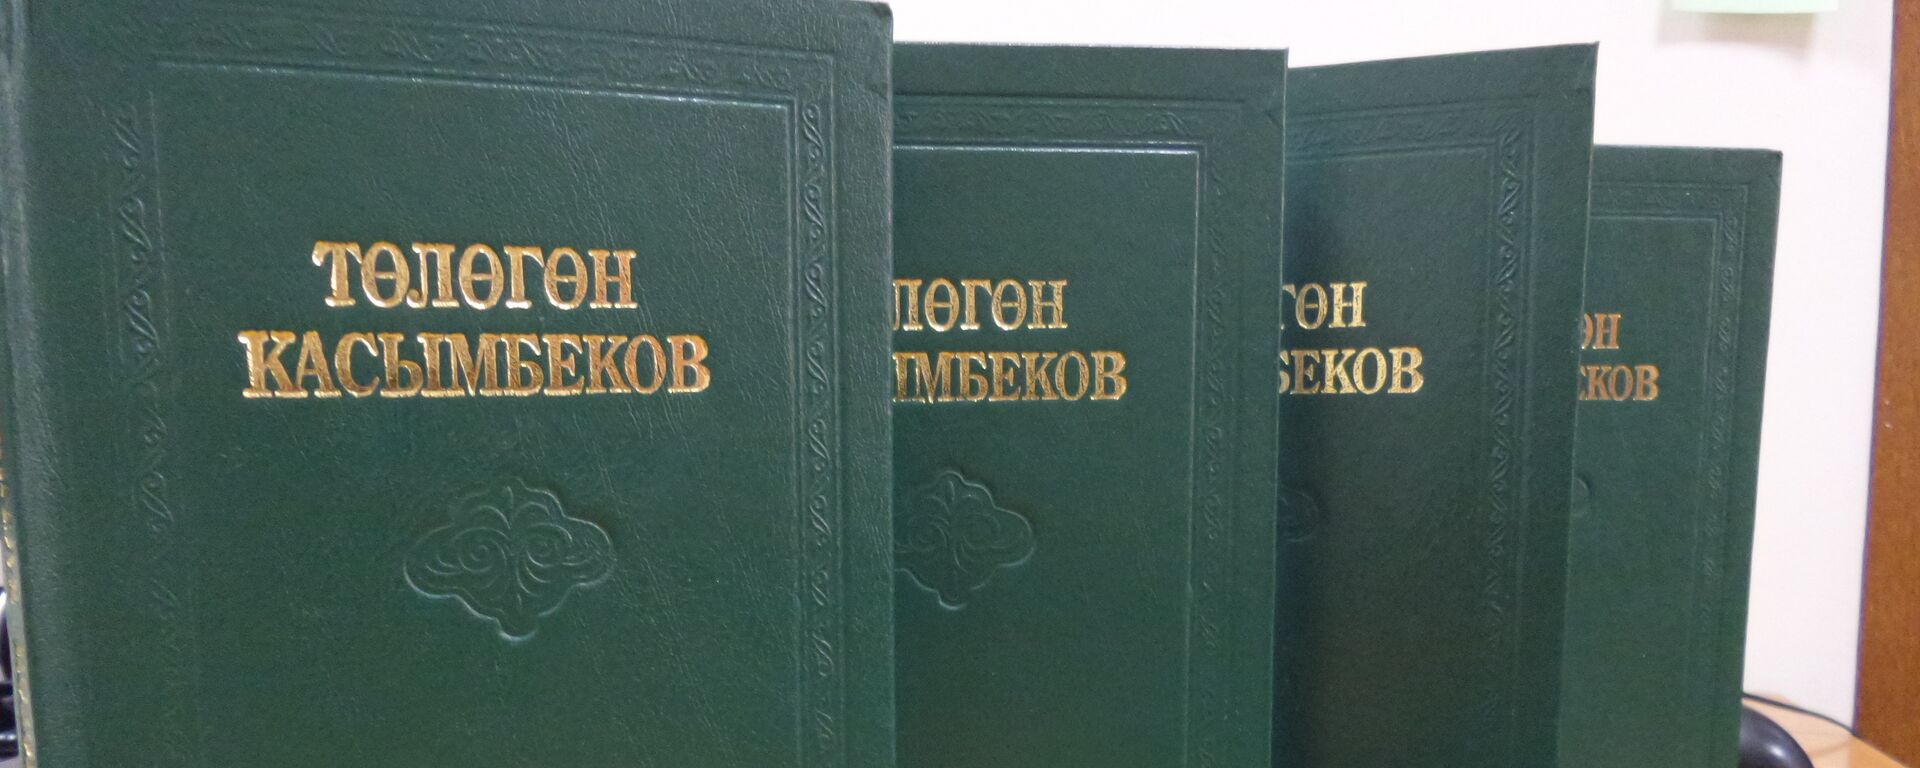 Төлөгөн Касымбековдун жыйнагы. Архив - Sputnik Кыргызстан, 1920, 21.11.2015